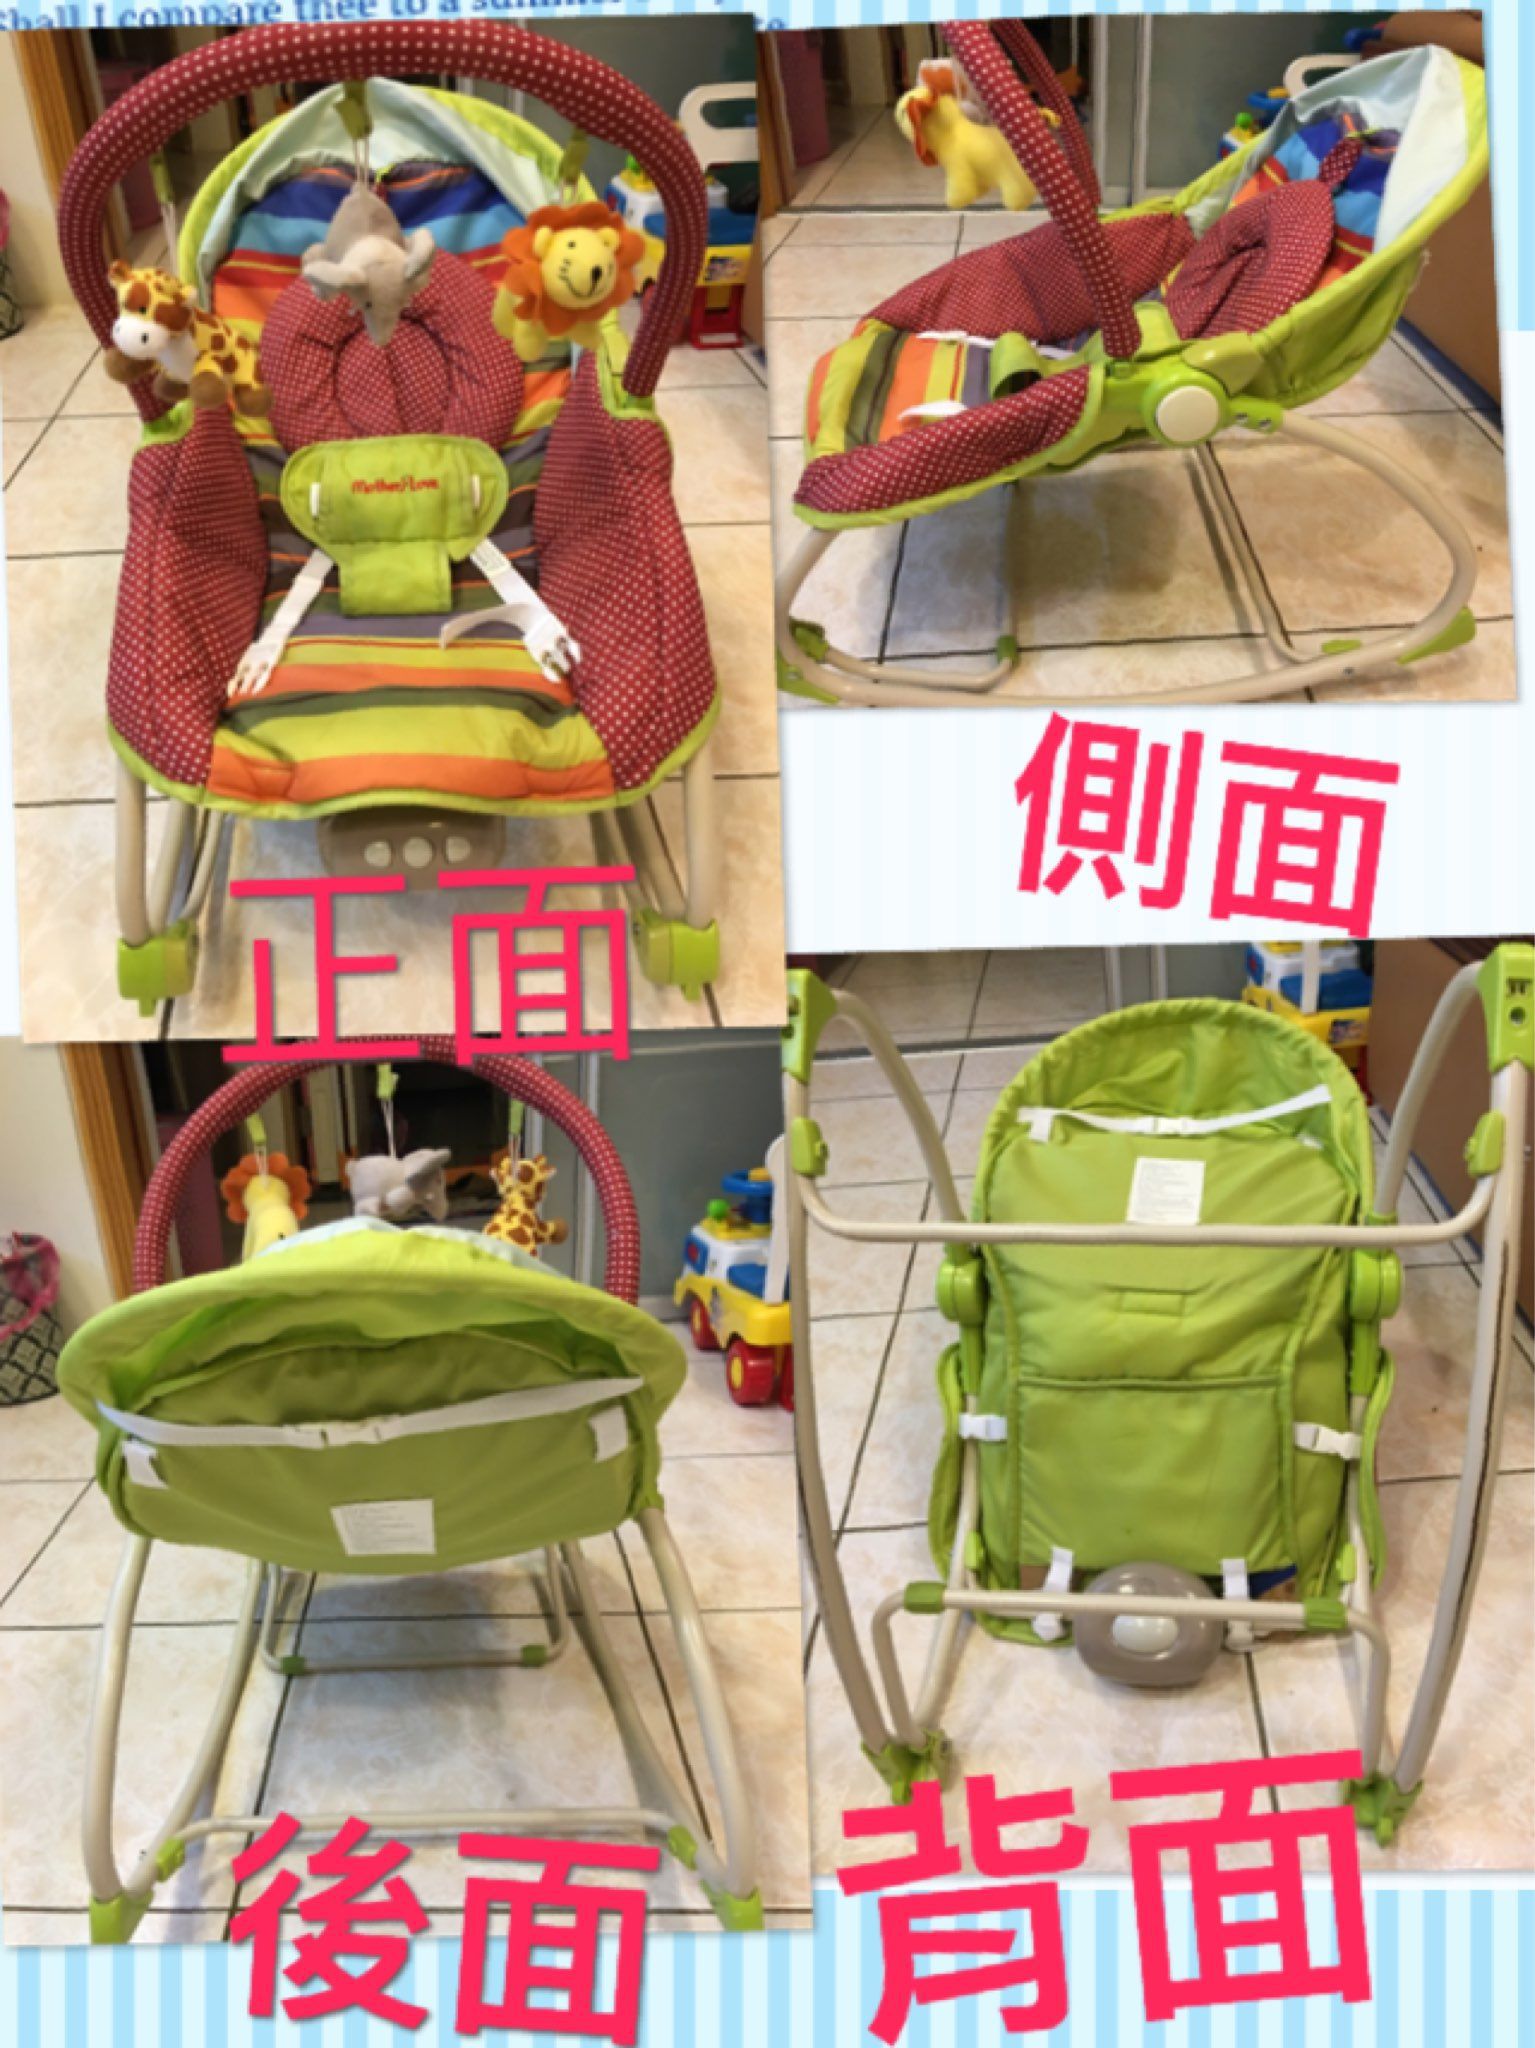 出售二手嬰兒躺椅